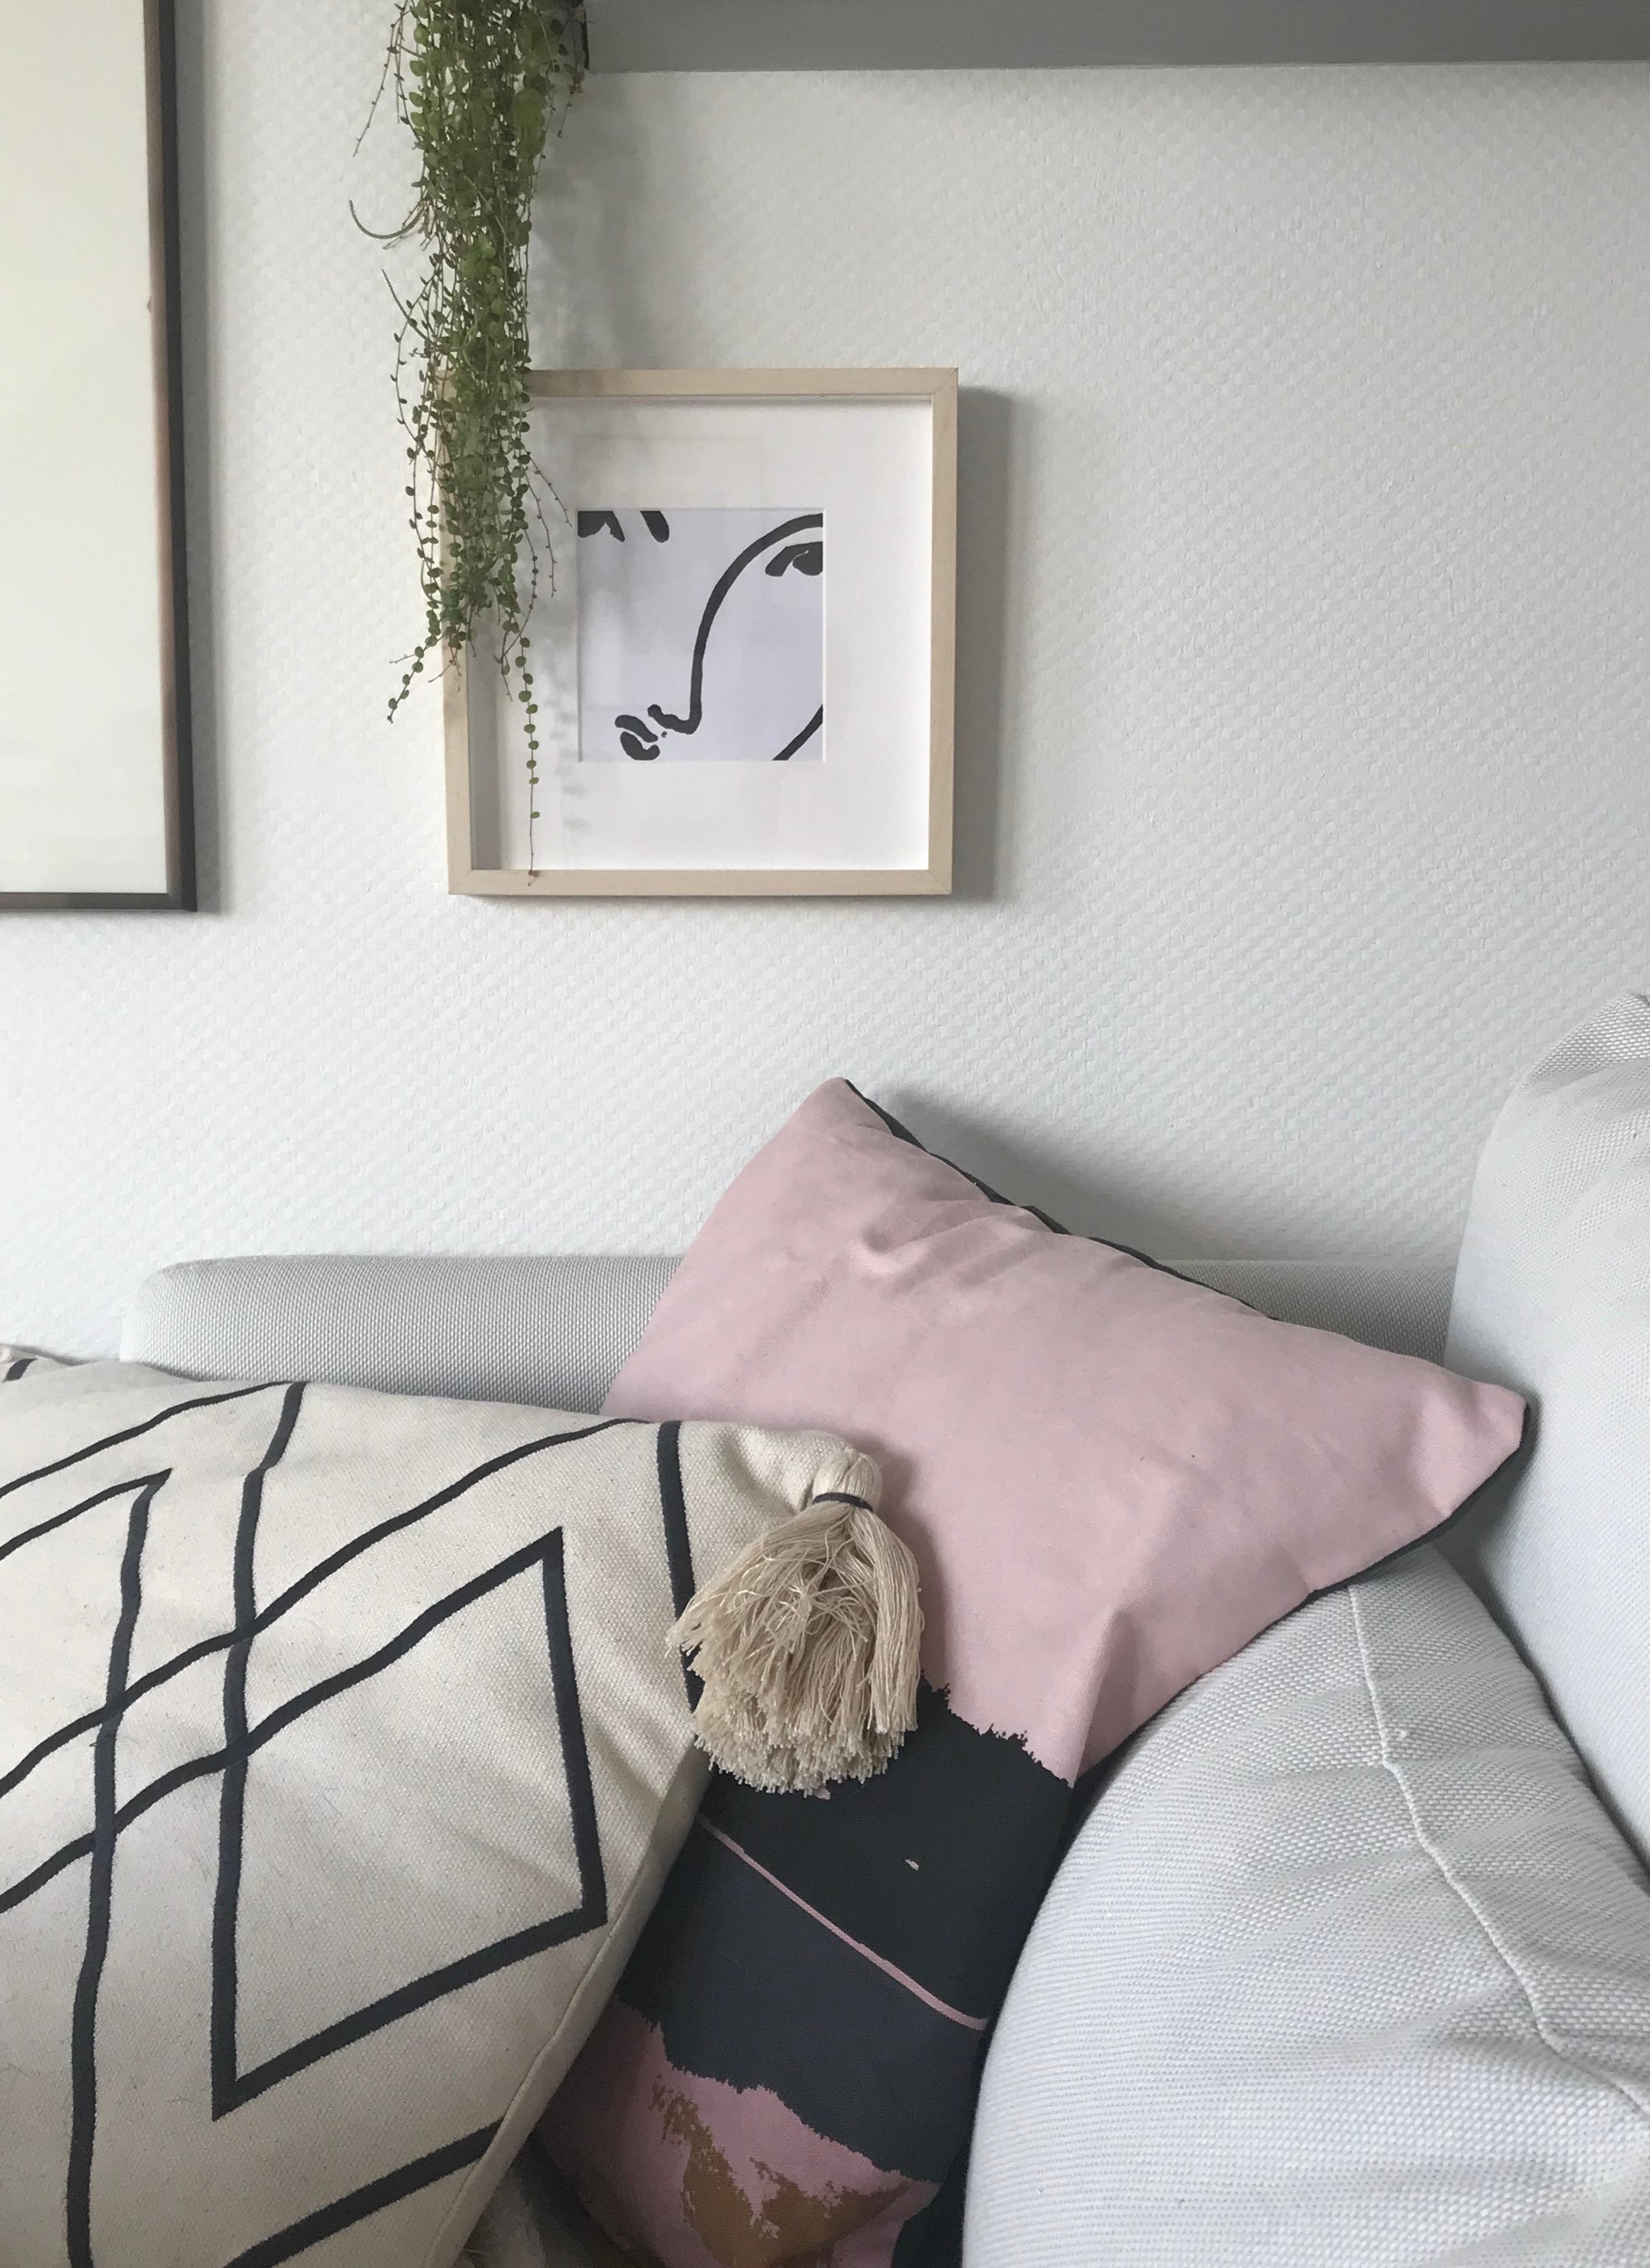 Ein kleines Matisse#diy hängt jetzt im #wohnzimmer